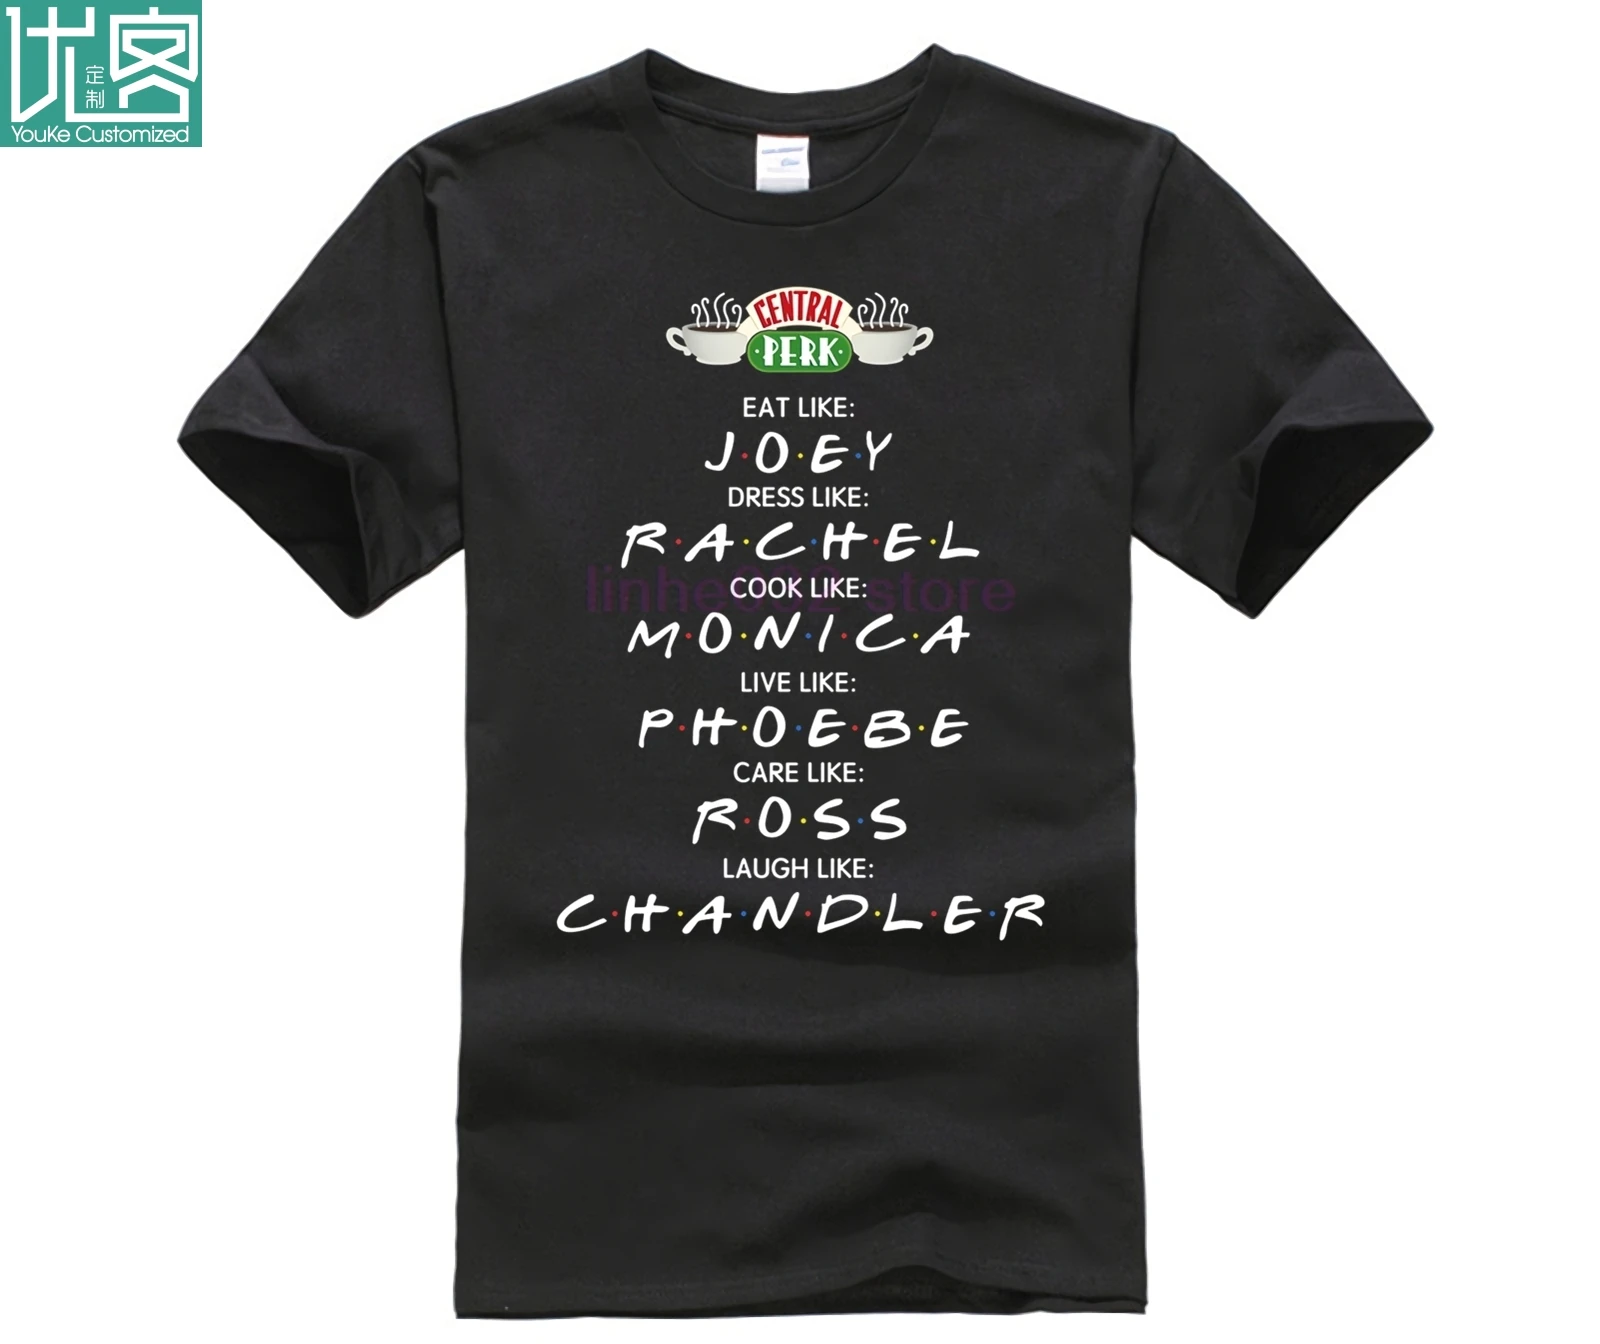 Фото Мужская короткая футболка с принтом съедобного как Джои Рейчел друзья ТВ шоу 2020